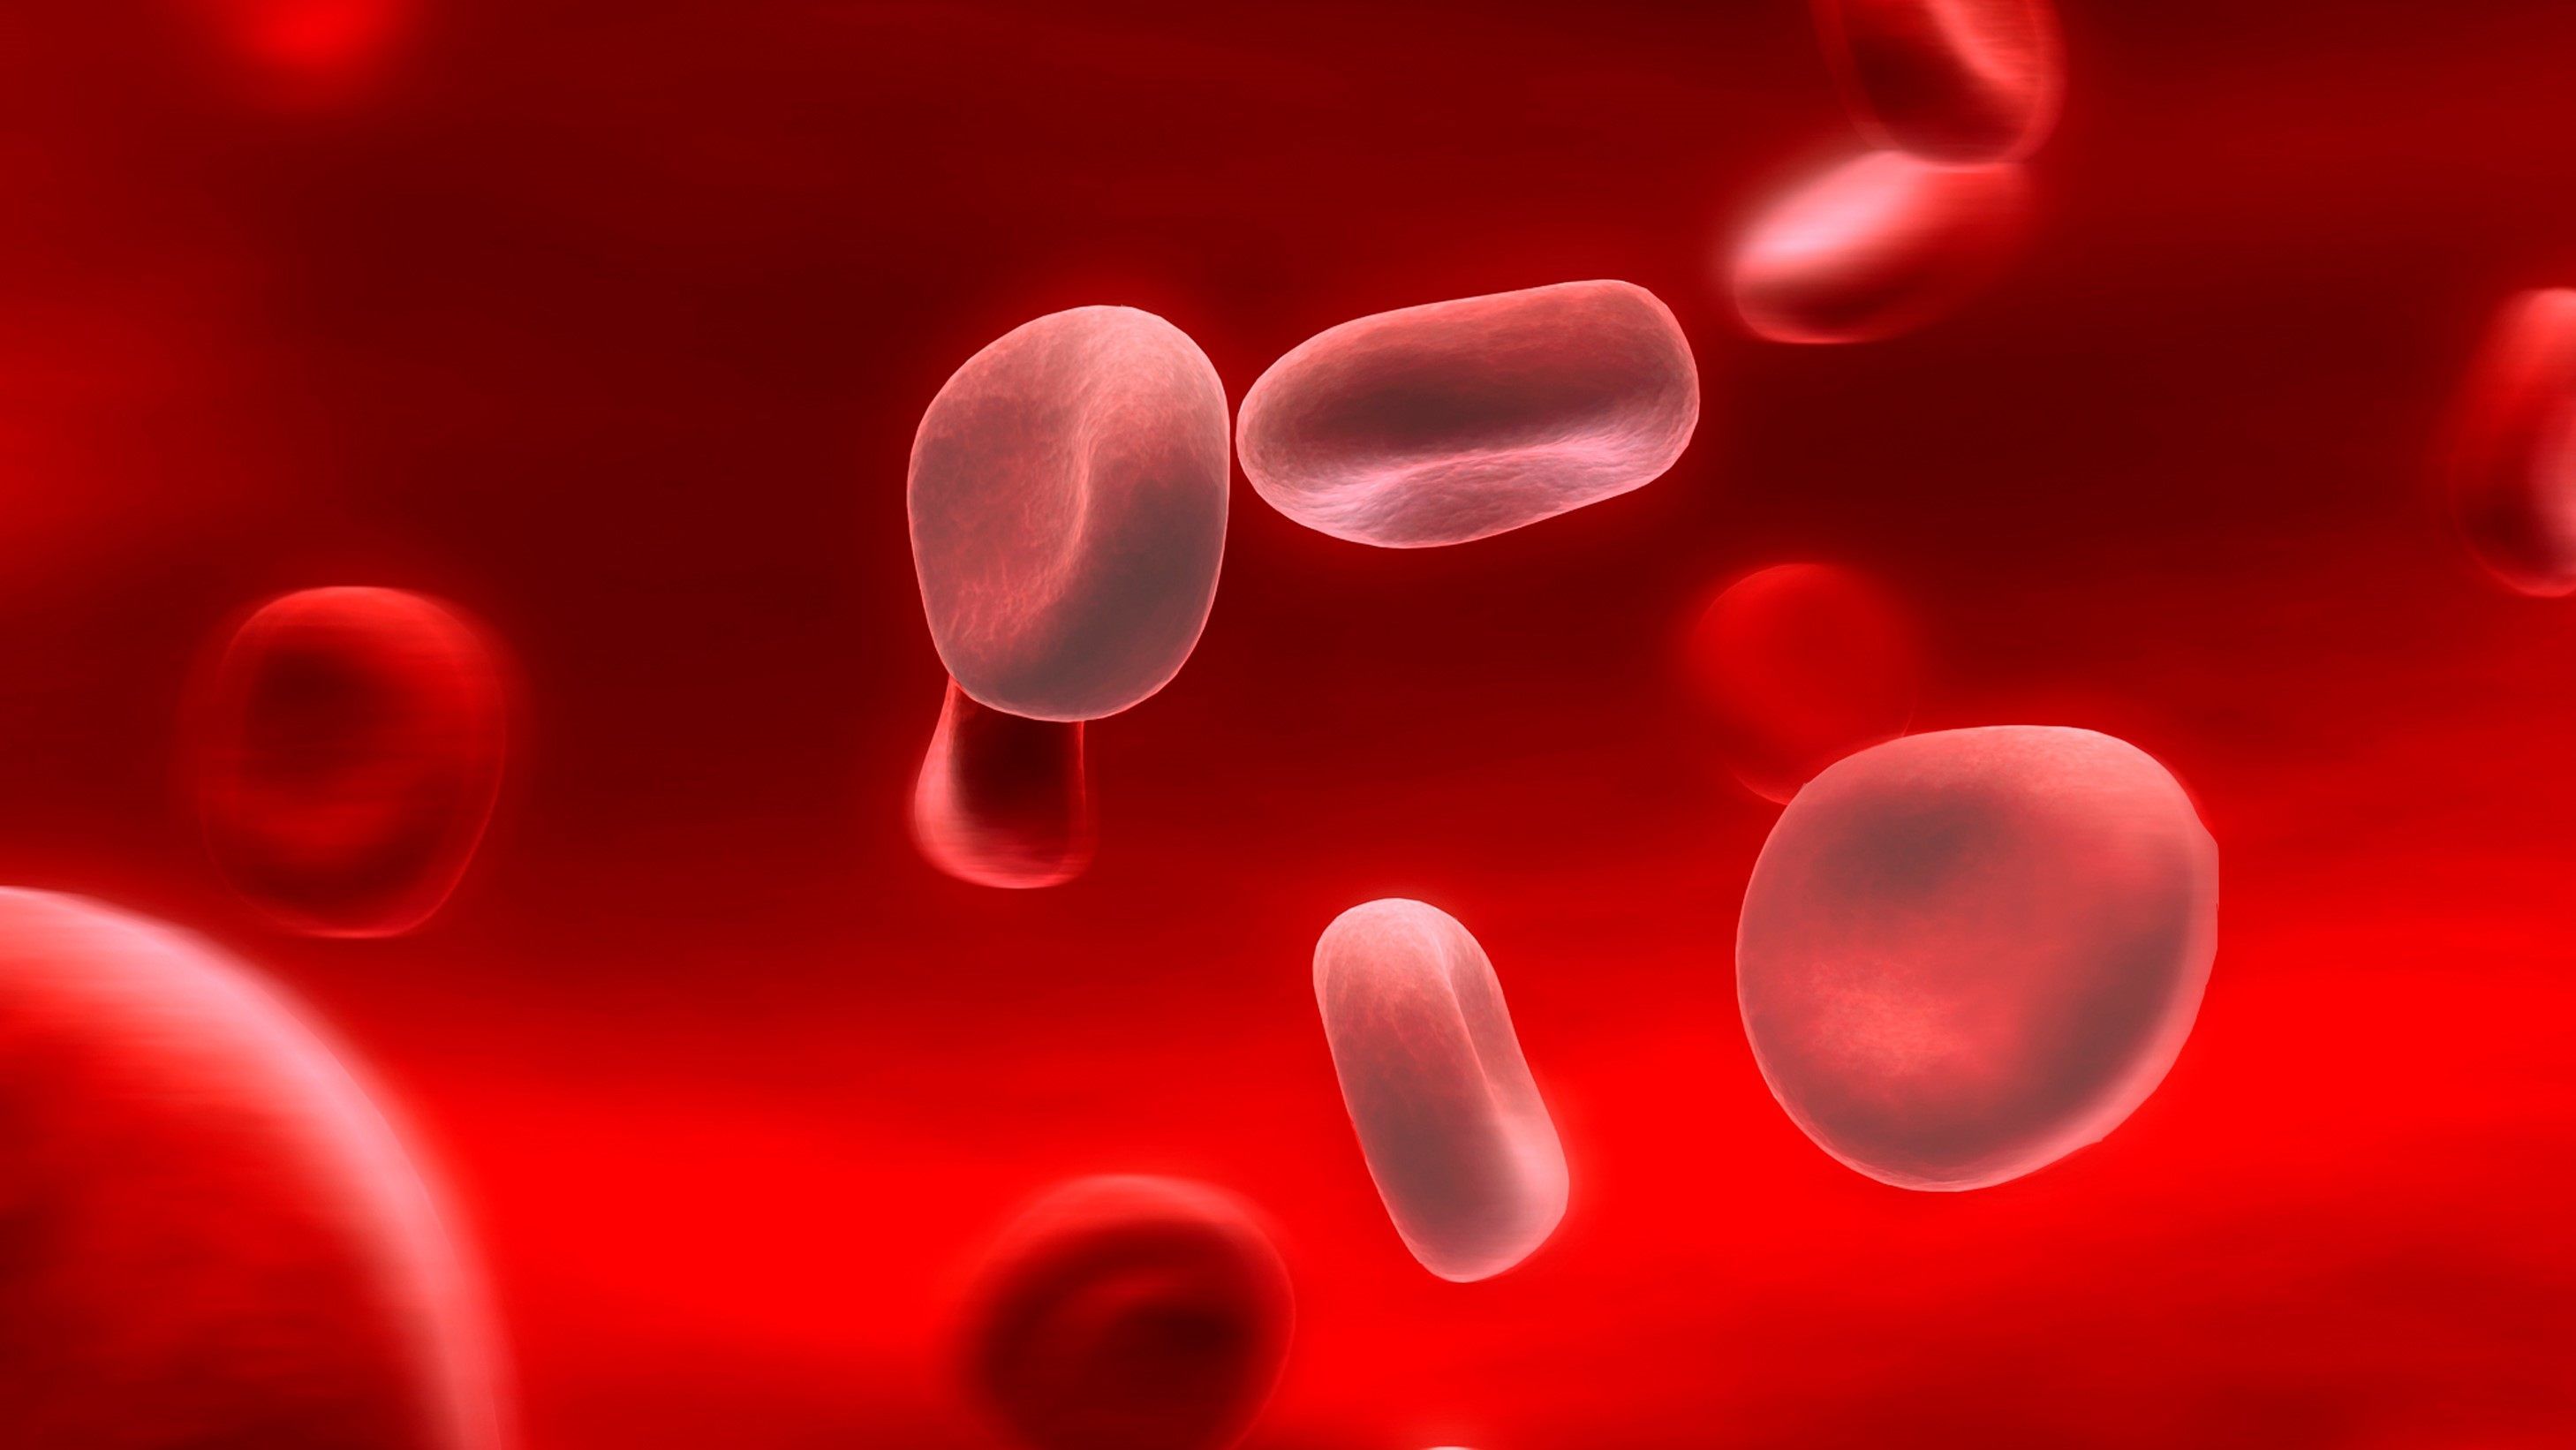 खून की कमी यानी एनेमिया के कई प्रकार हो सकते हैं, आप भी जानिए इनके बारे में